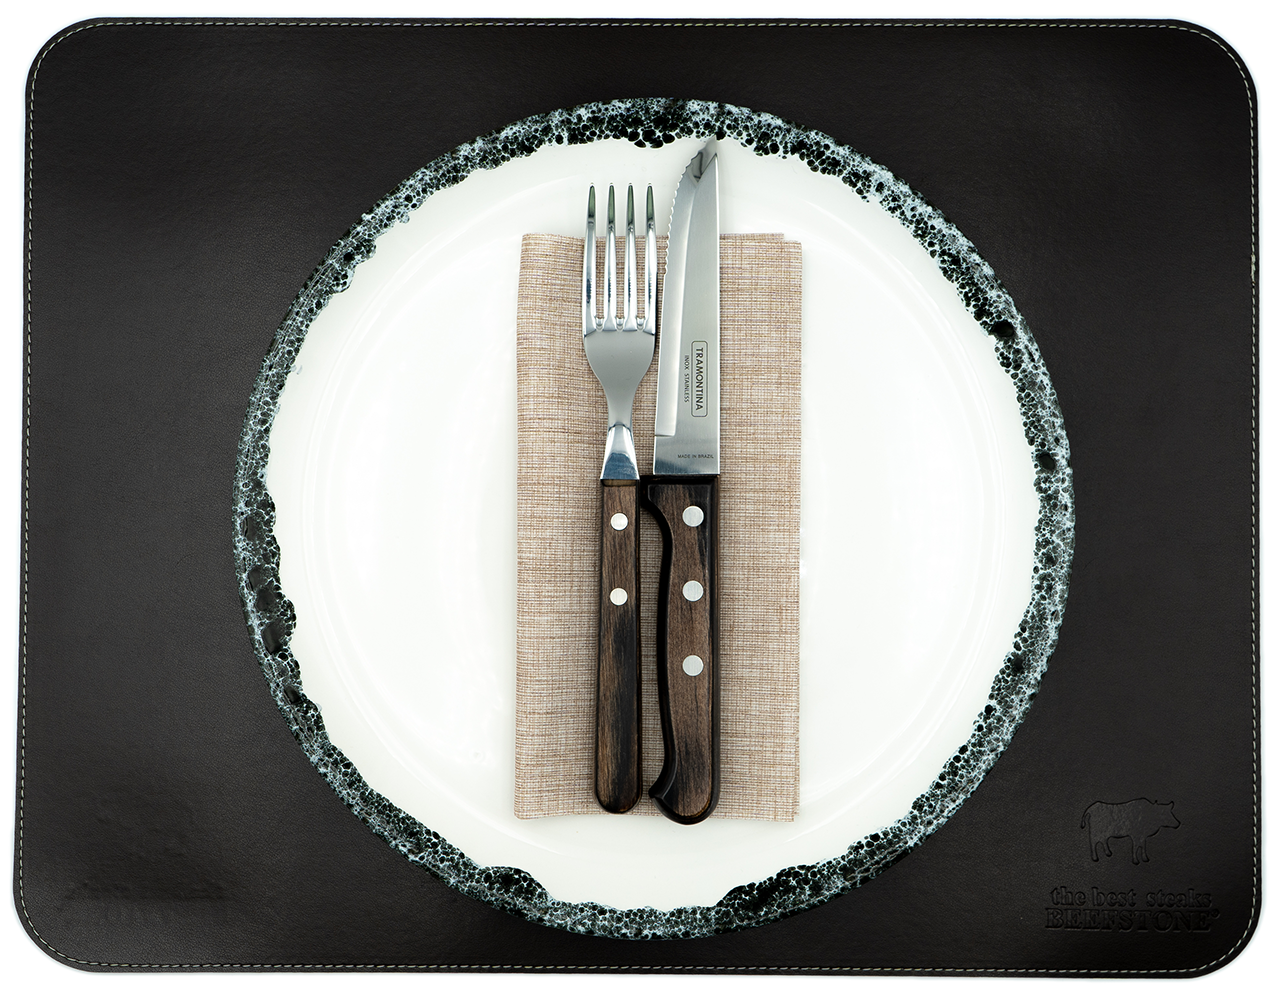 1 Original Beefstone® Tischset aus veganem PU Kunstleder - doppelseitig - 44 x 34 cm - Schwarzbraun / Ecru